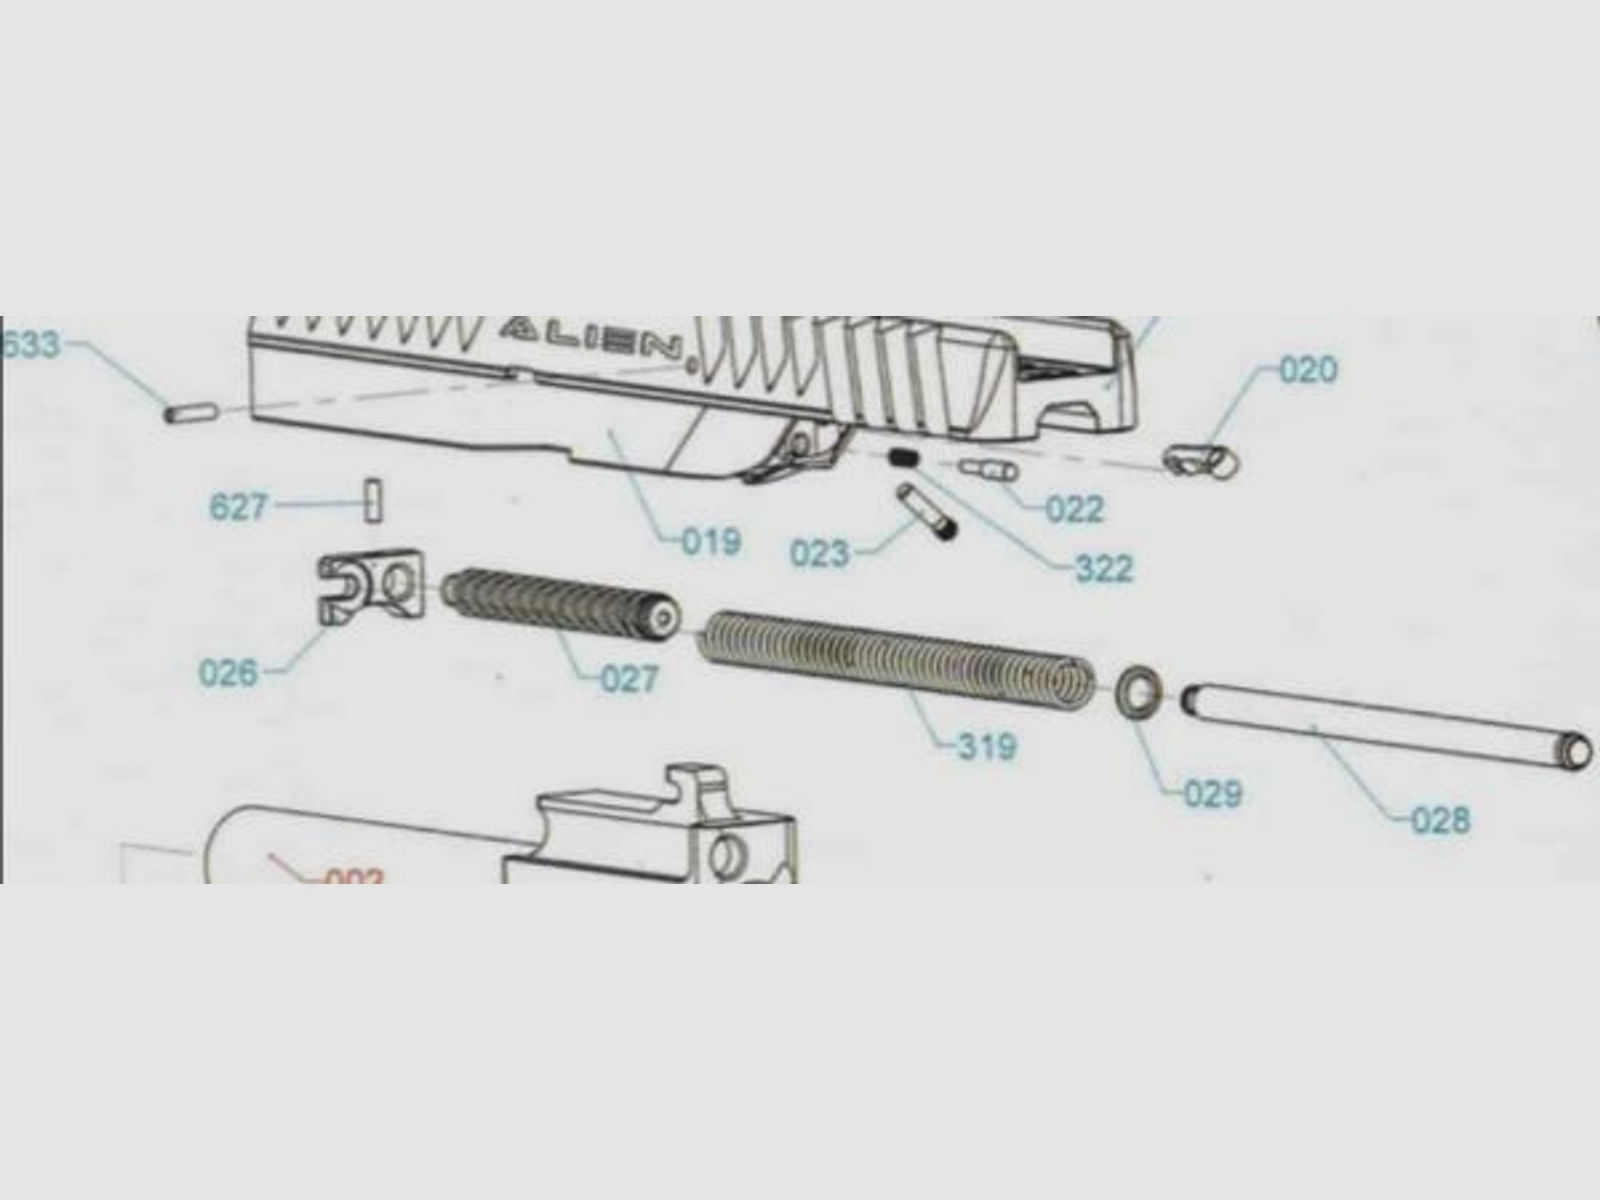 Laugo Arms Tuning/Ersatzteil f. Pistole Gaskolbenset /Baugruppe f. Alien